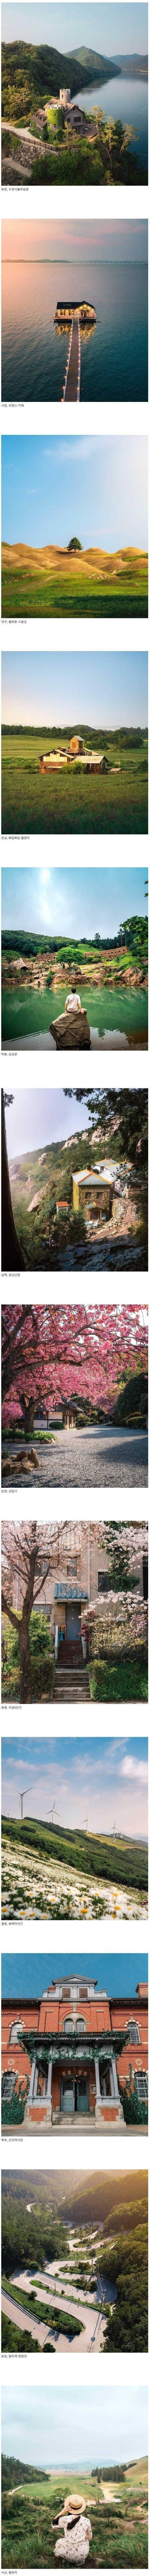 한국인도 잘 모르는 한국의 풍경.jpg